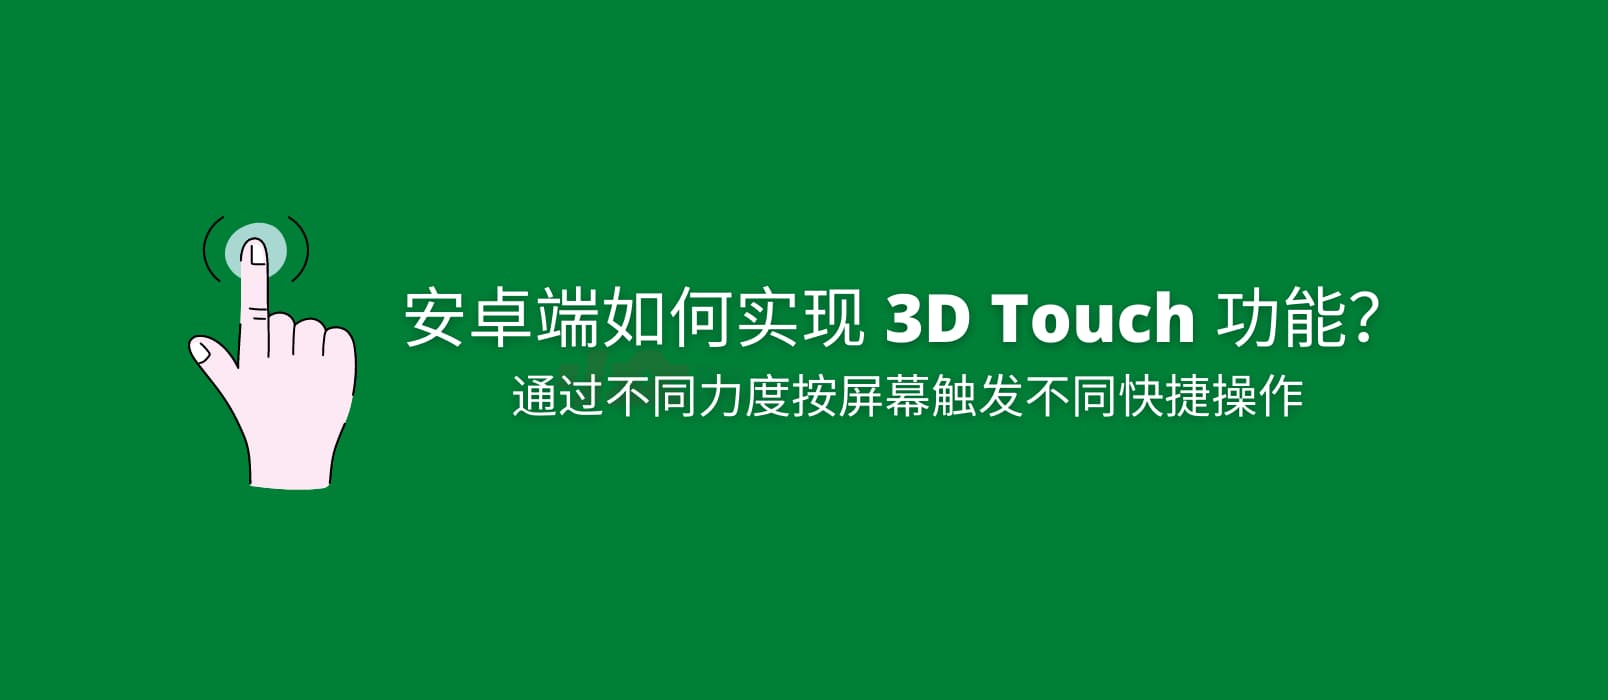 如何实现安卓端 3D Touch 功能？ 1